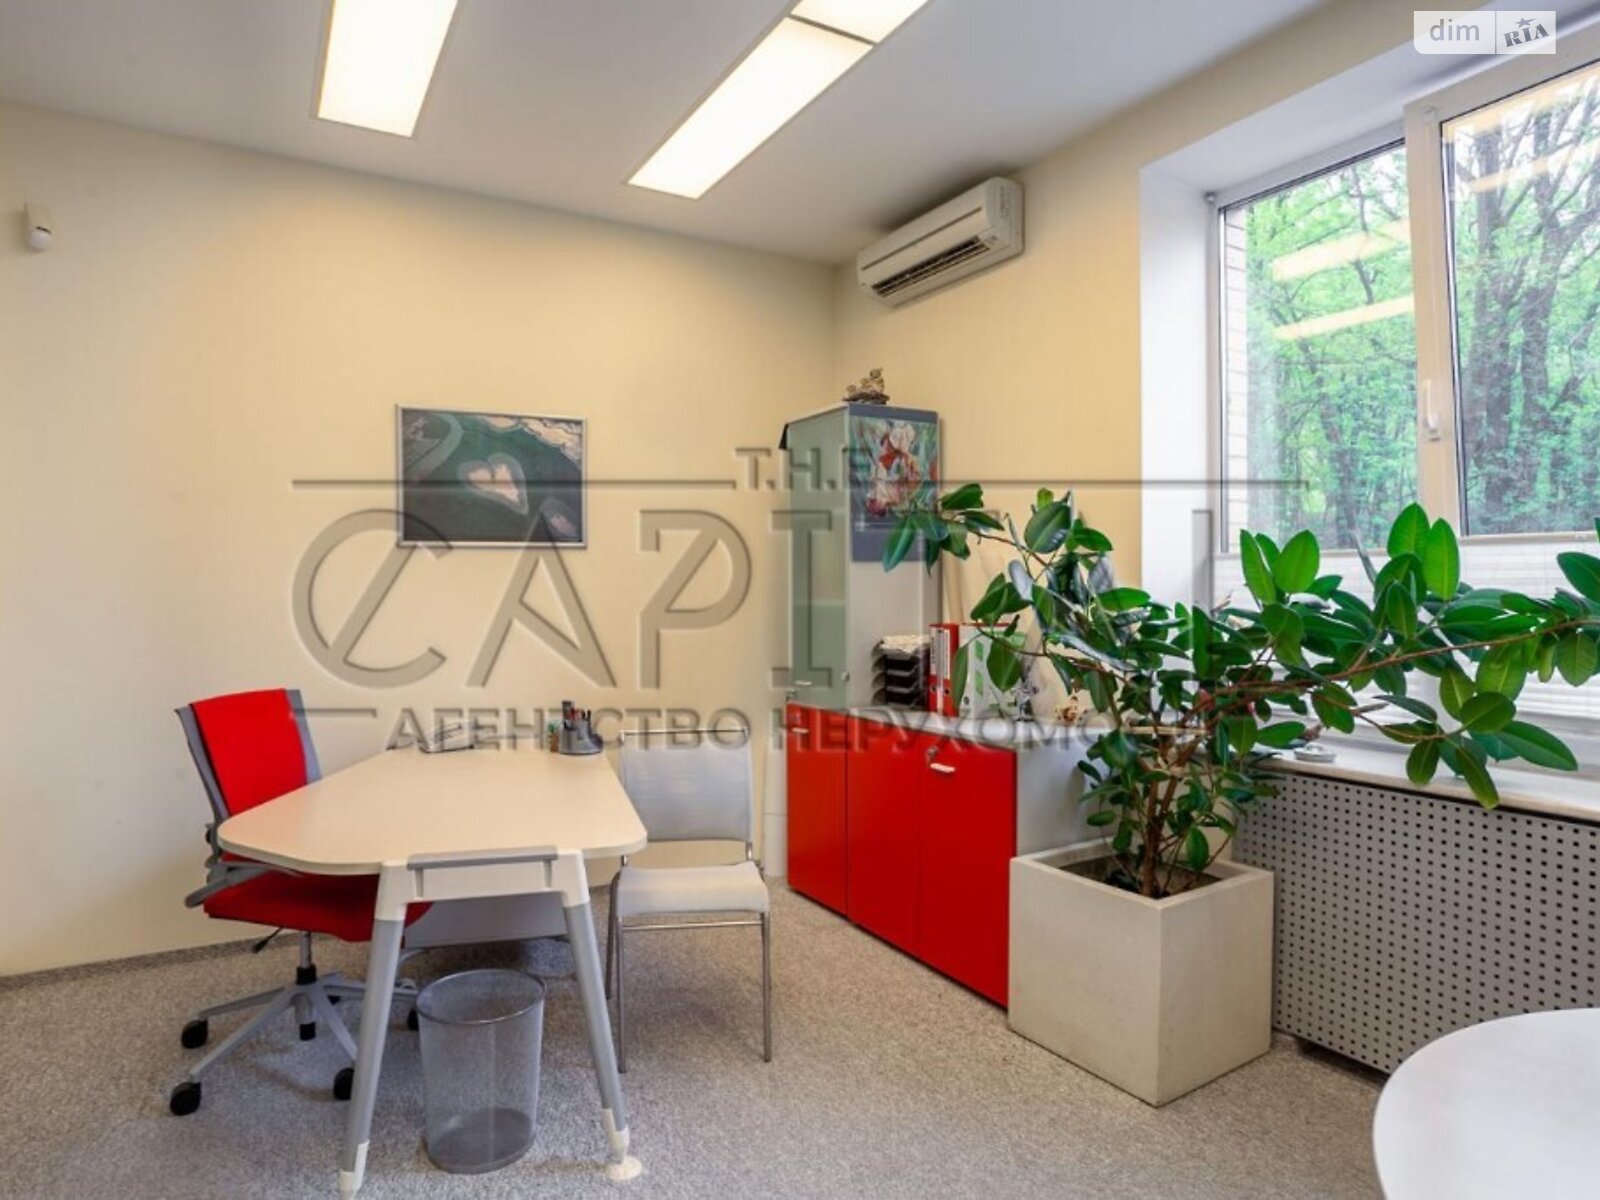 Аренда офисного помещения в Киеве, Деловая улица 2А, помещений - 5, этаж - 2 фото 1